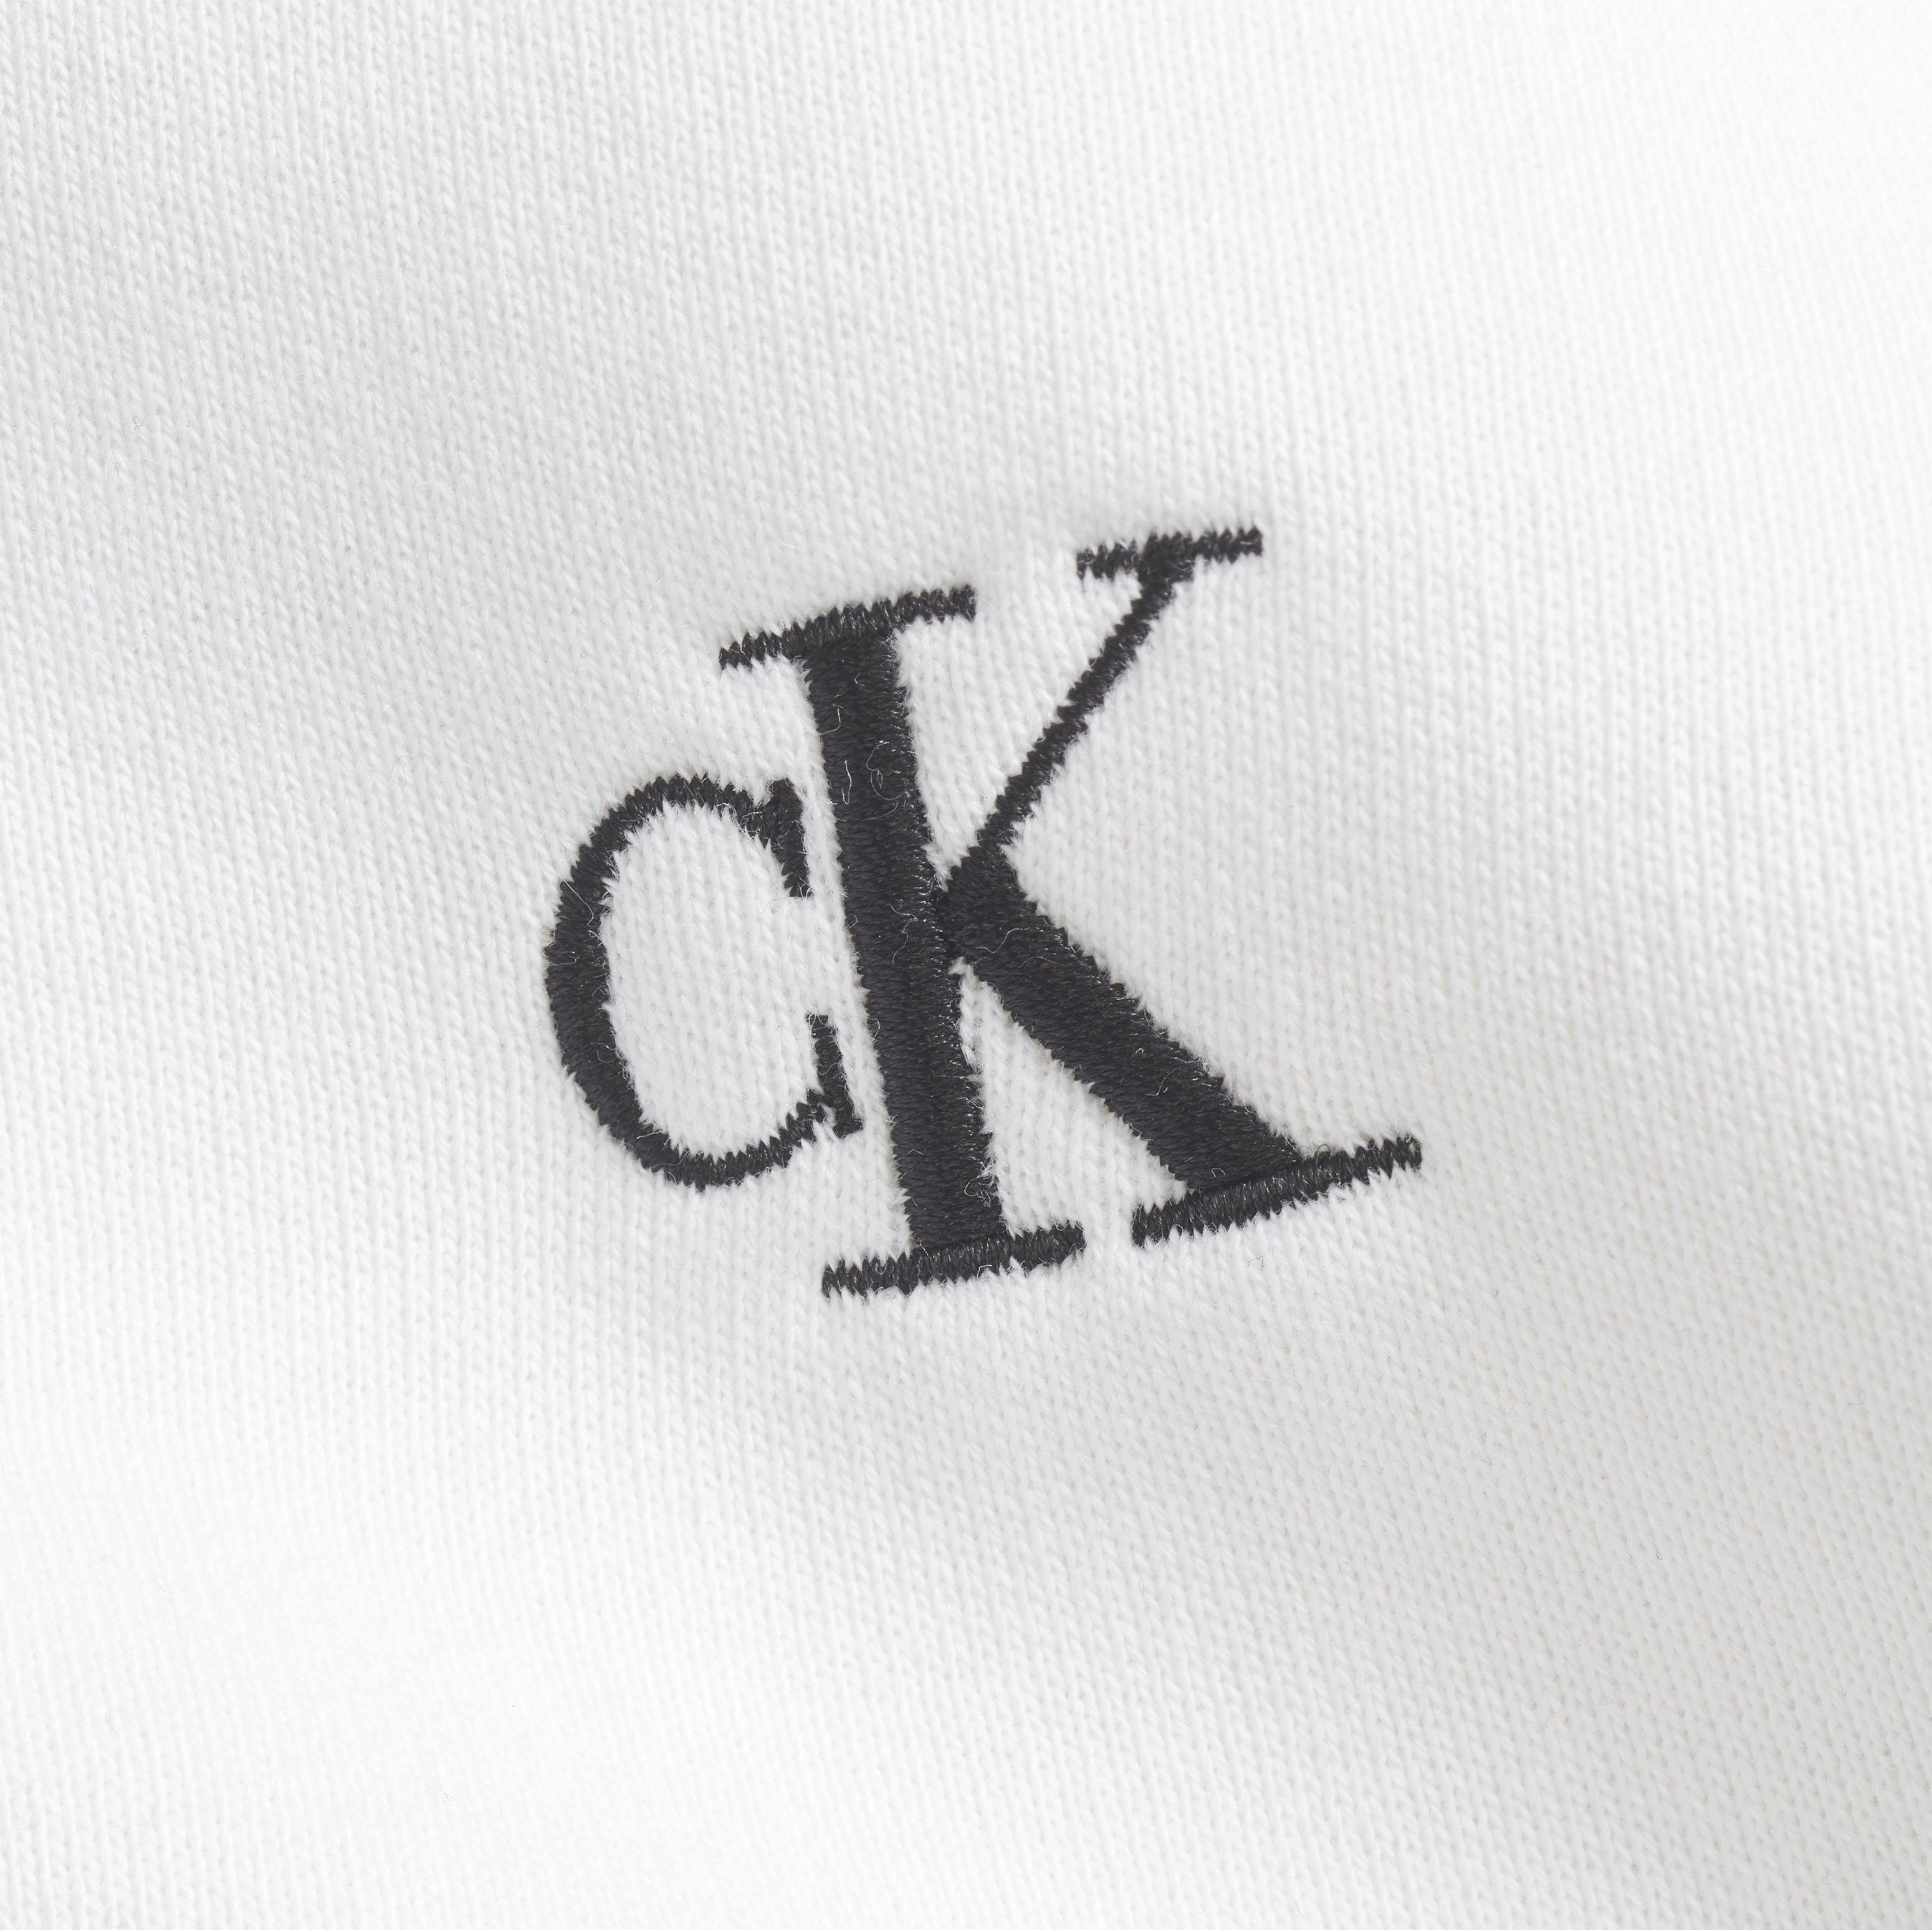 Jeans Sweatshirt White CK ESSENTIAL Bright CN Klein Calvin REG